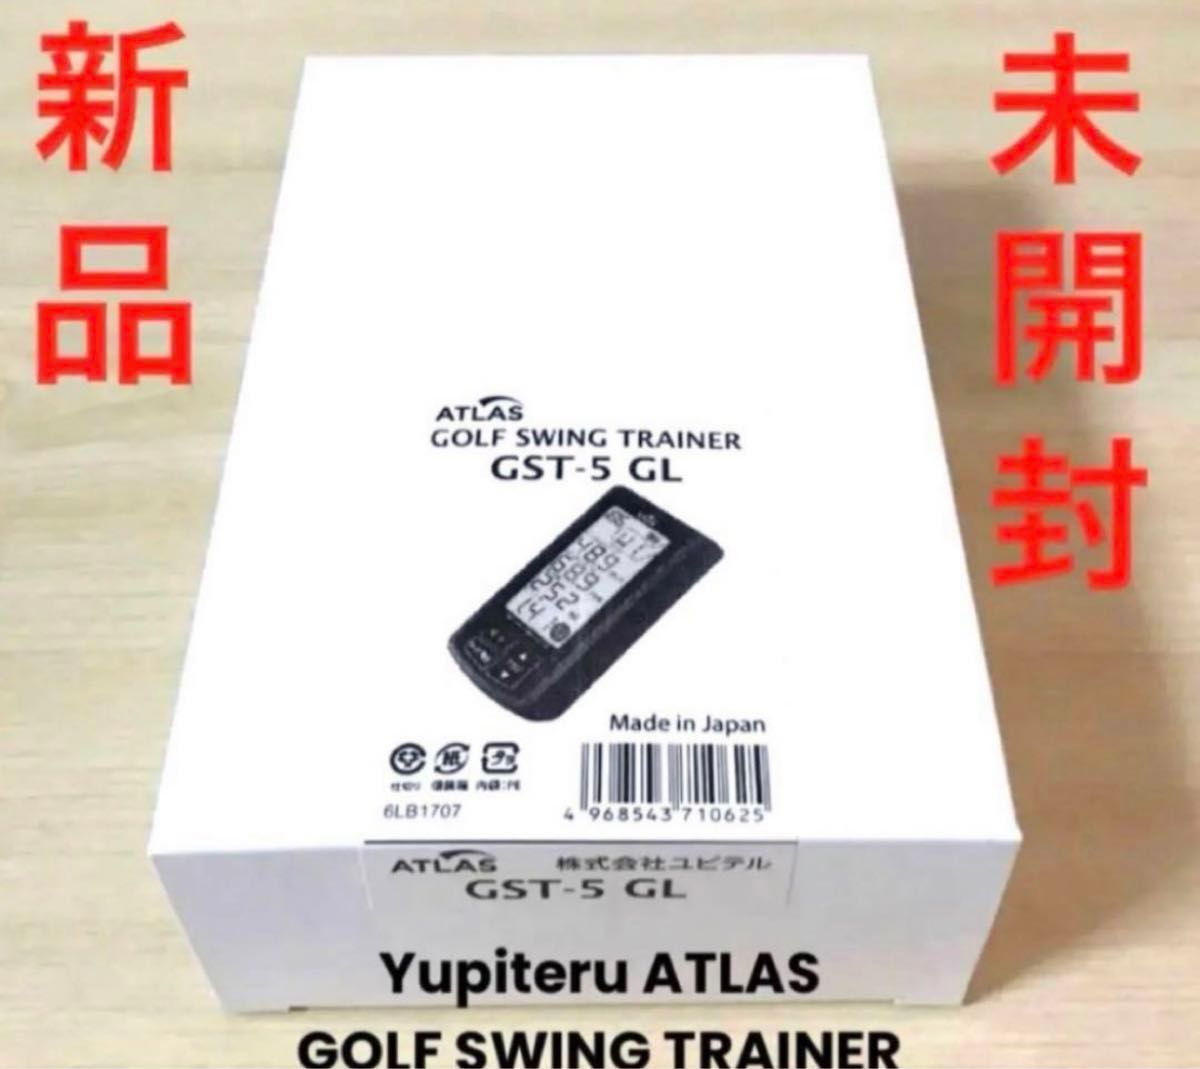 新品未開封・ユピテルゴルフスイングトレーナー・Yupiteru Atlas GST5 GL【日本製】　　#ヘッドスピード測定器 